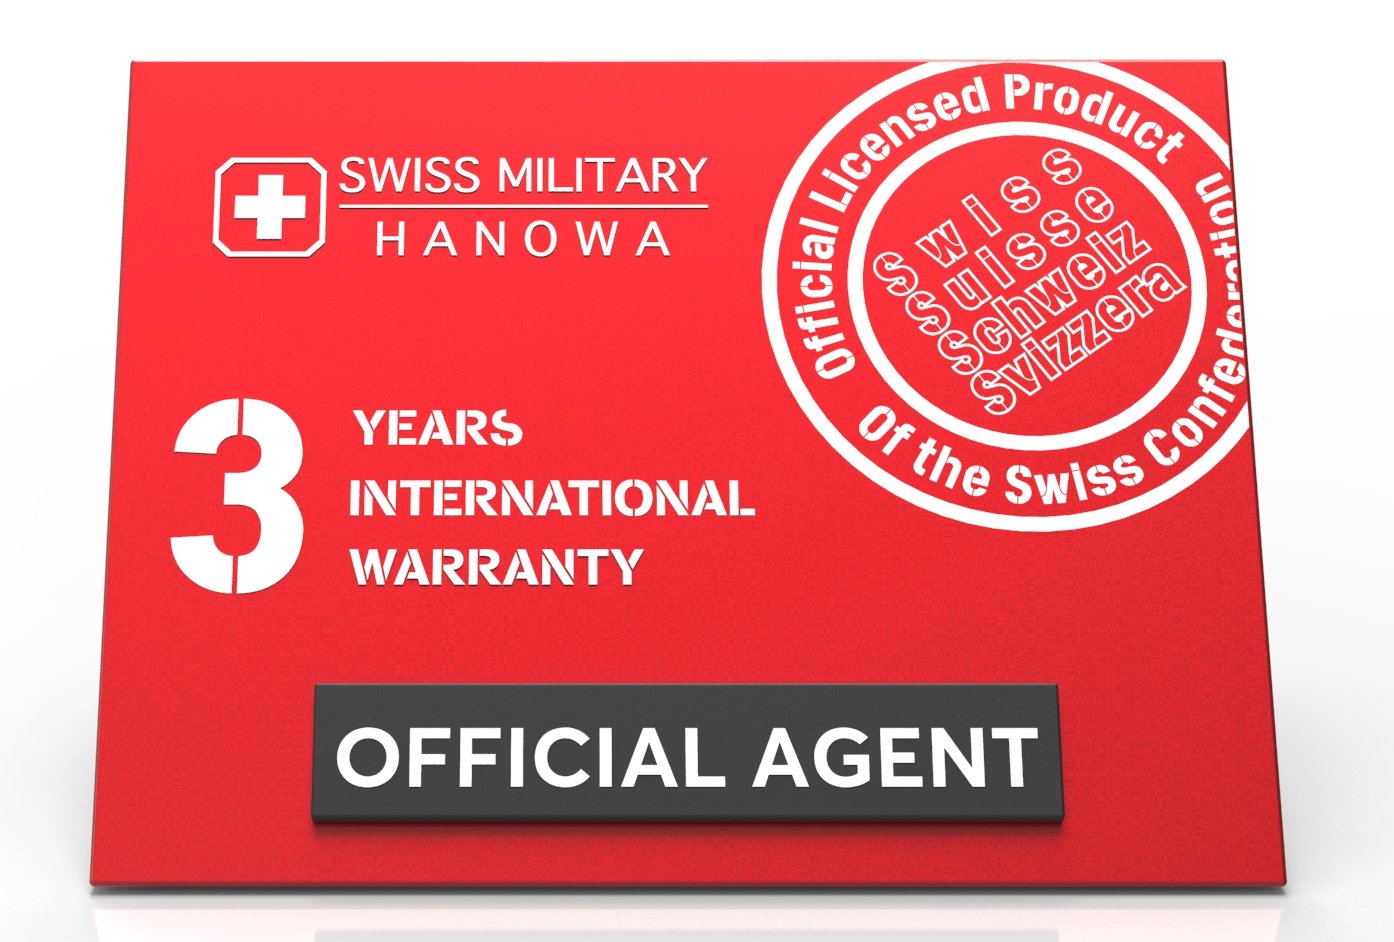 Swiss Military Hanowa - Puma- SMWGB2100340 – Swiss Military Hanowa Australia